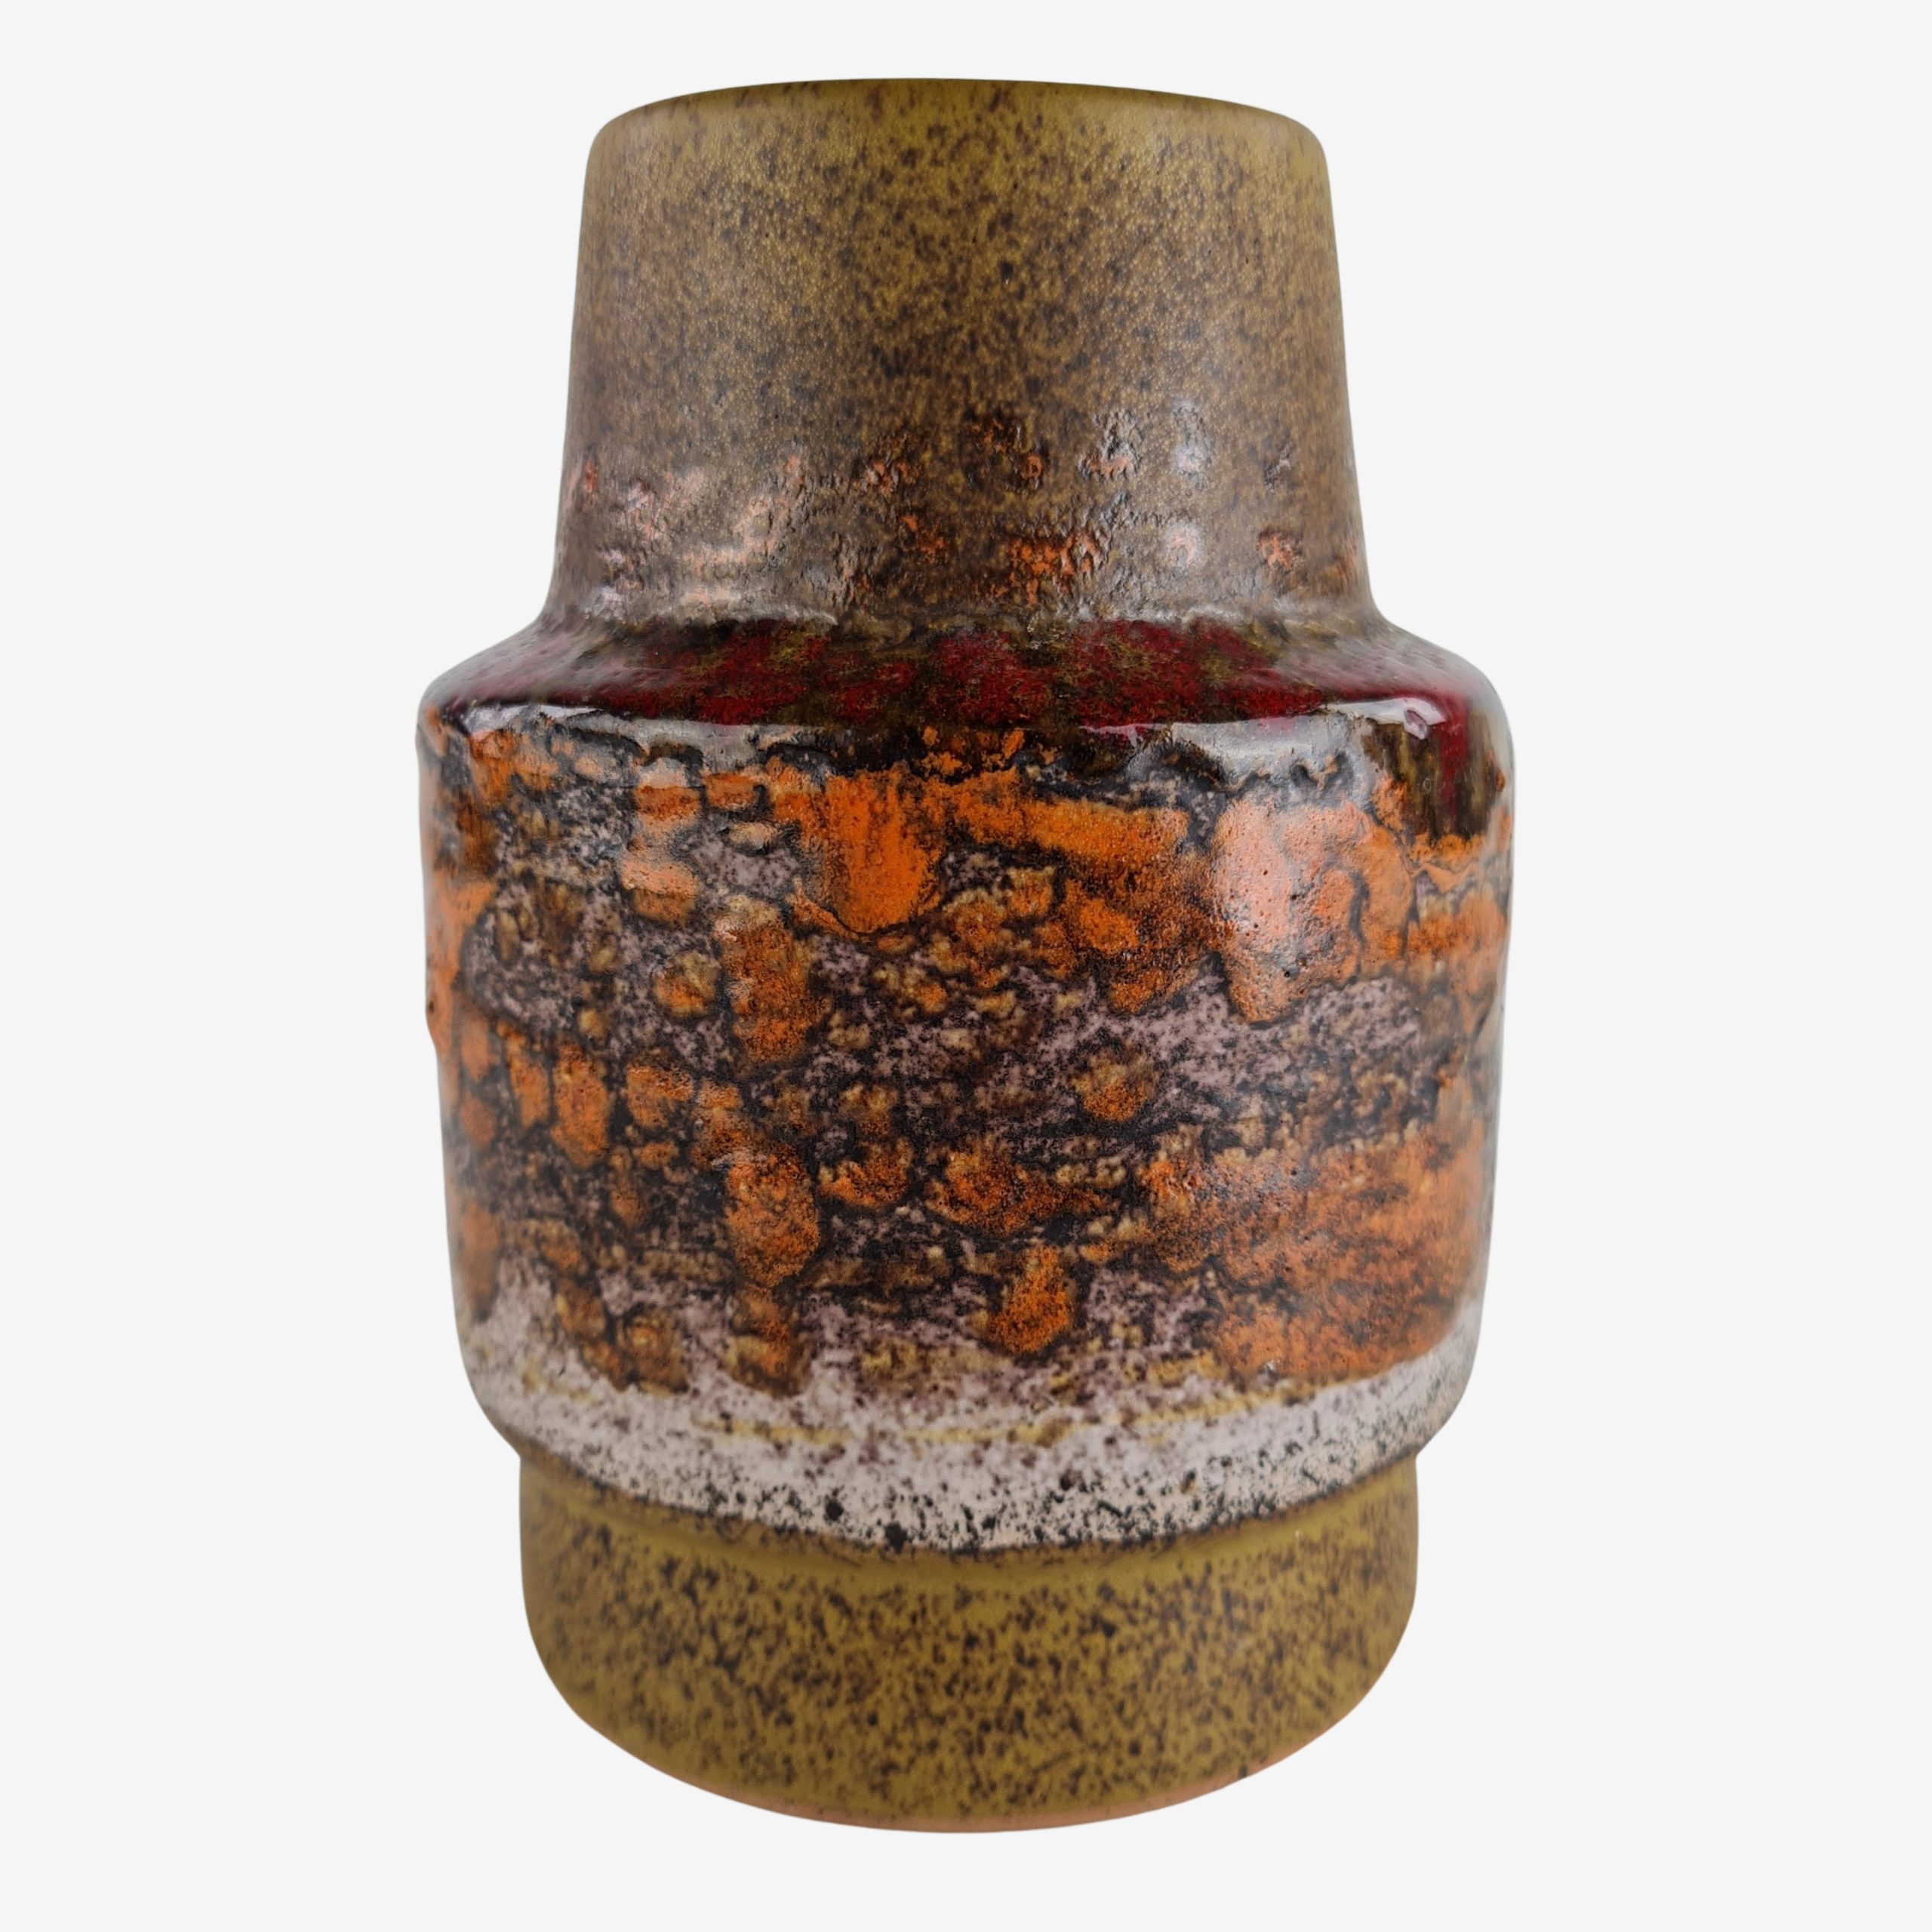 Ceramic vase | Tilghmans, Sweden